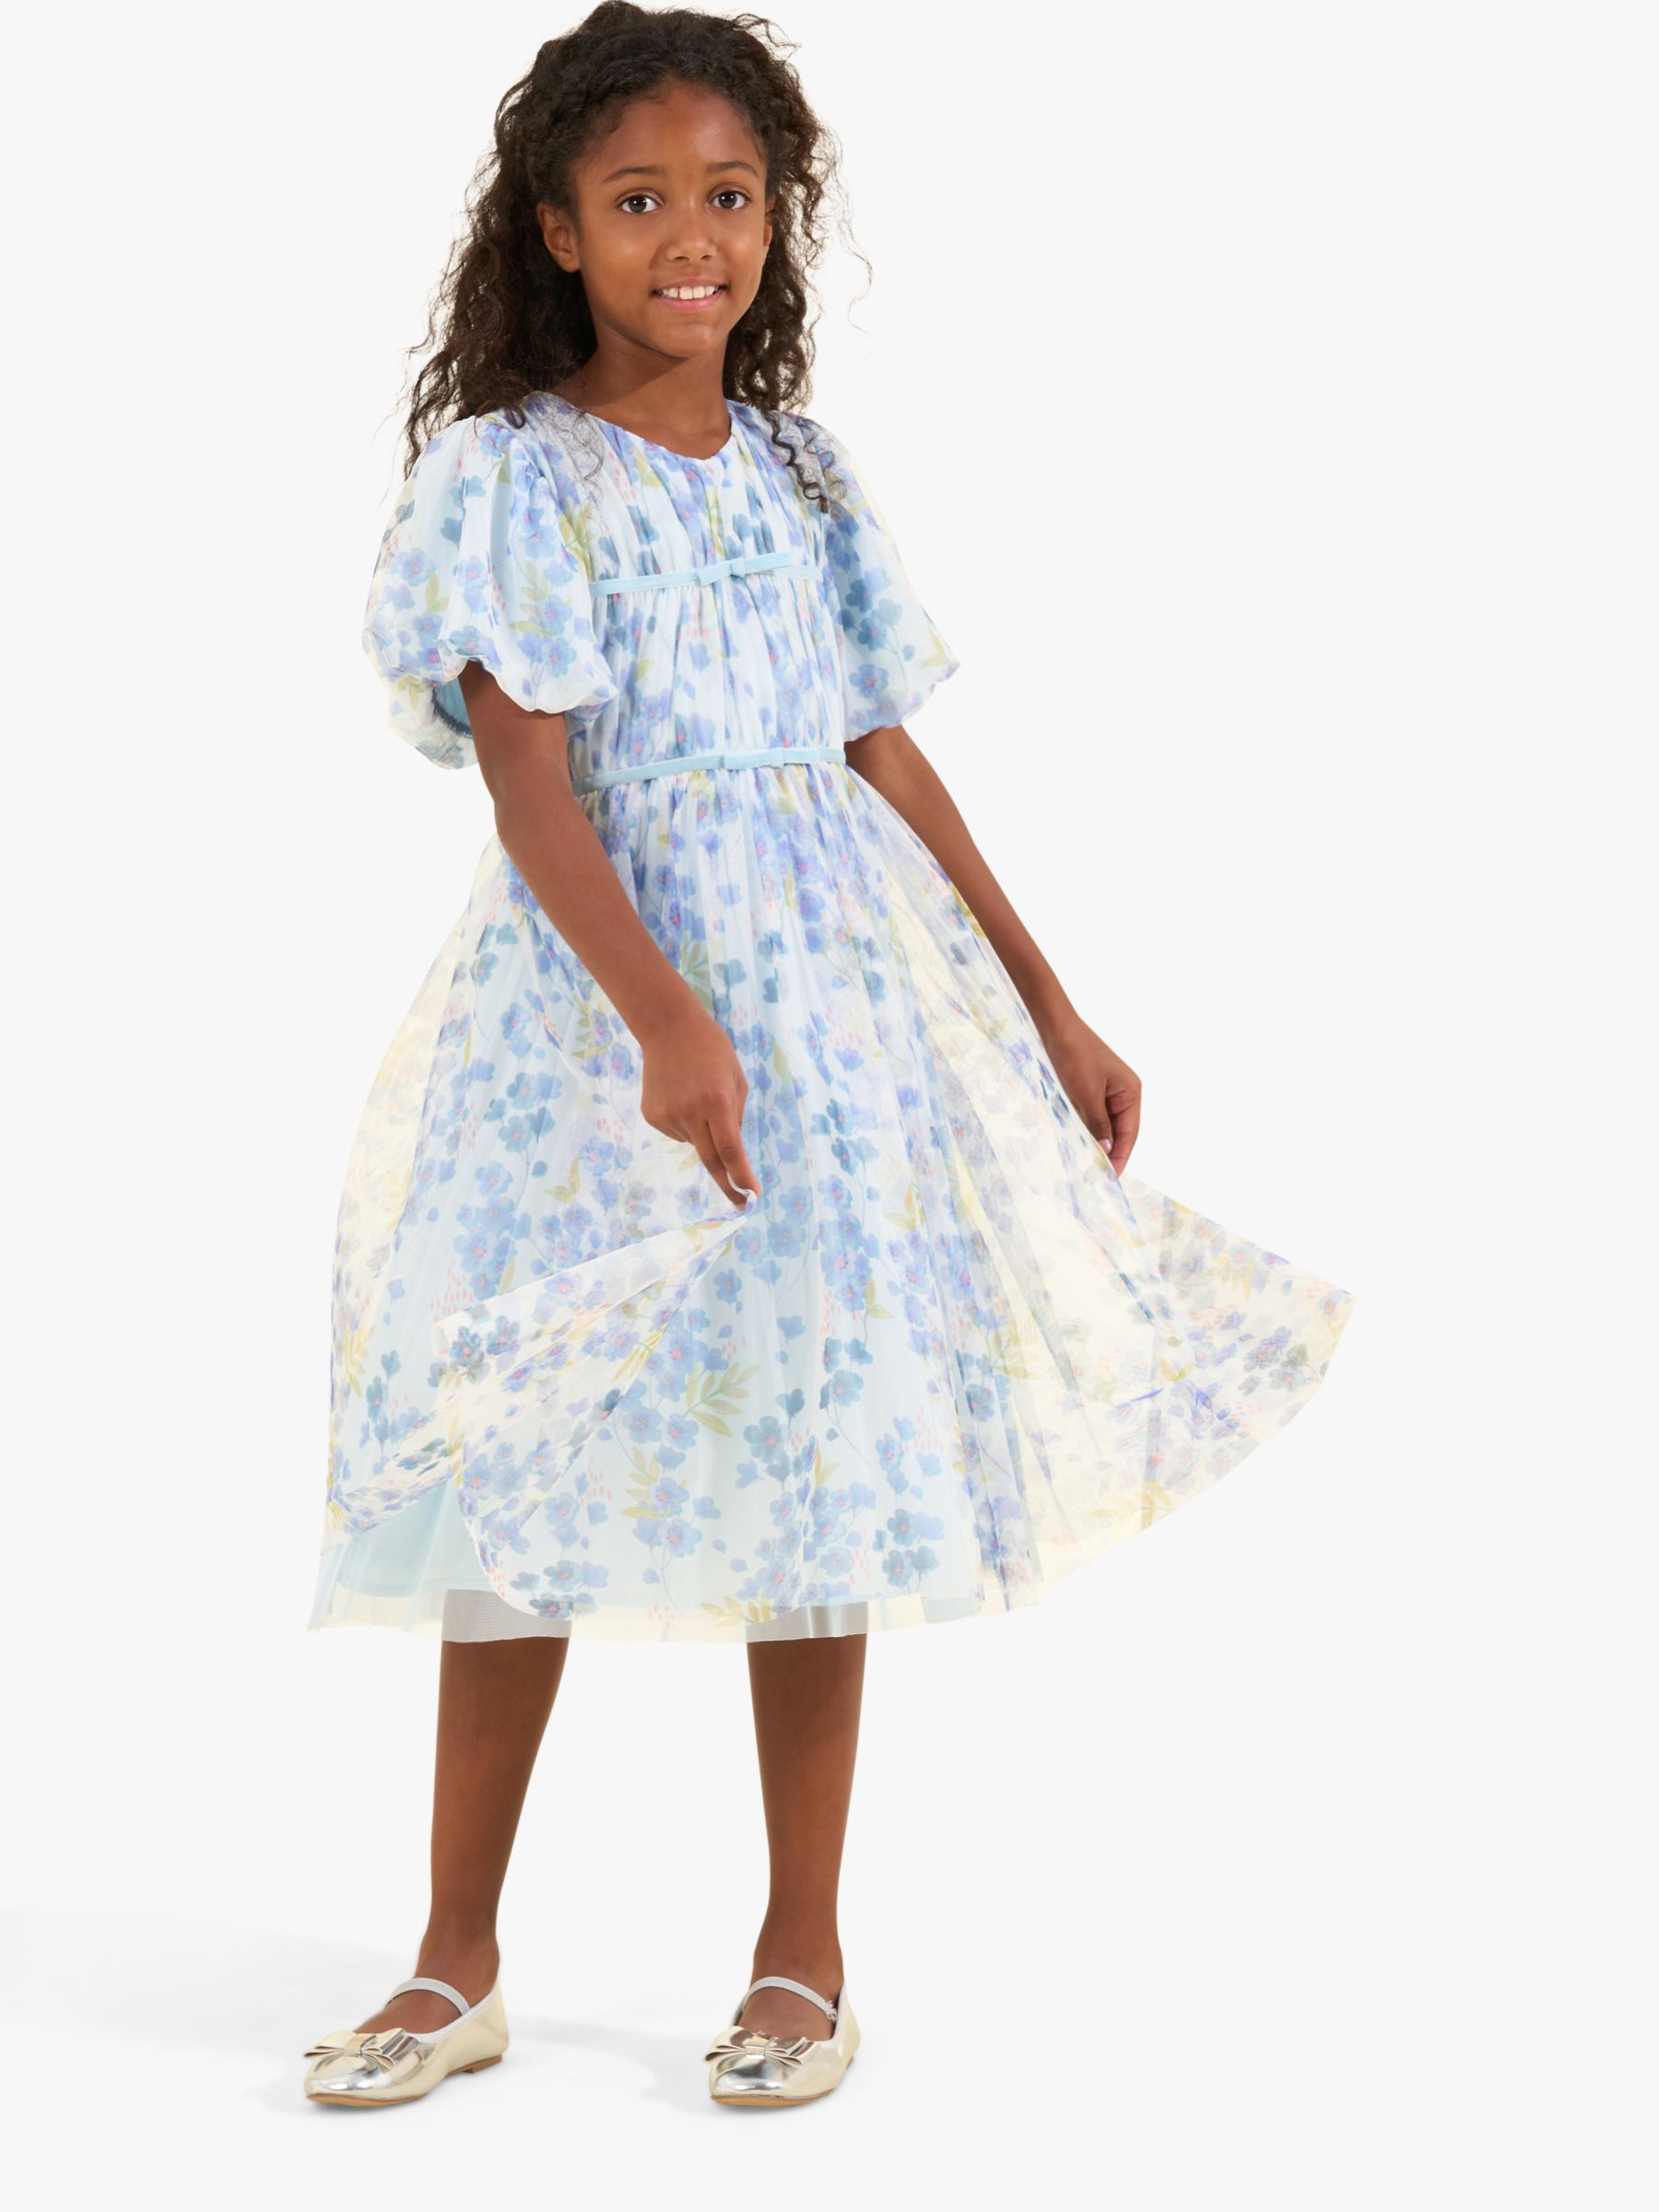 Buy Angel & Rocket Kids' Mina Floral Print Mesh Dress, Blue/Multi Online at johnlewis.com